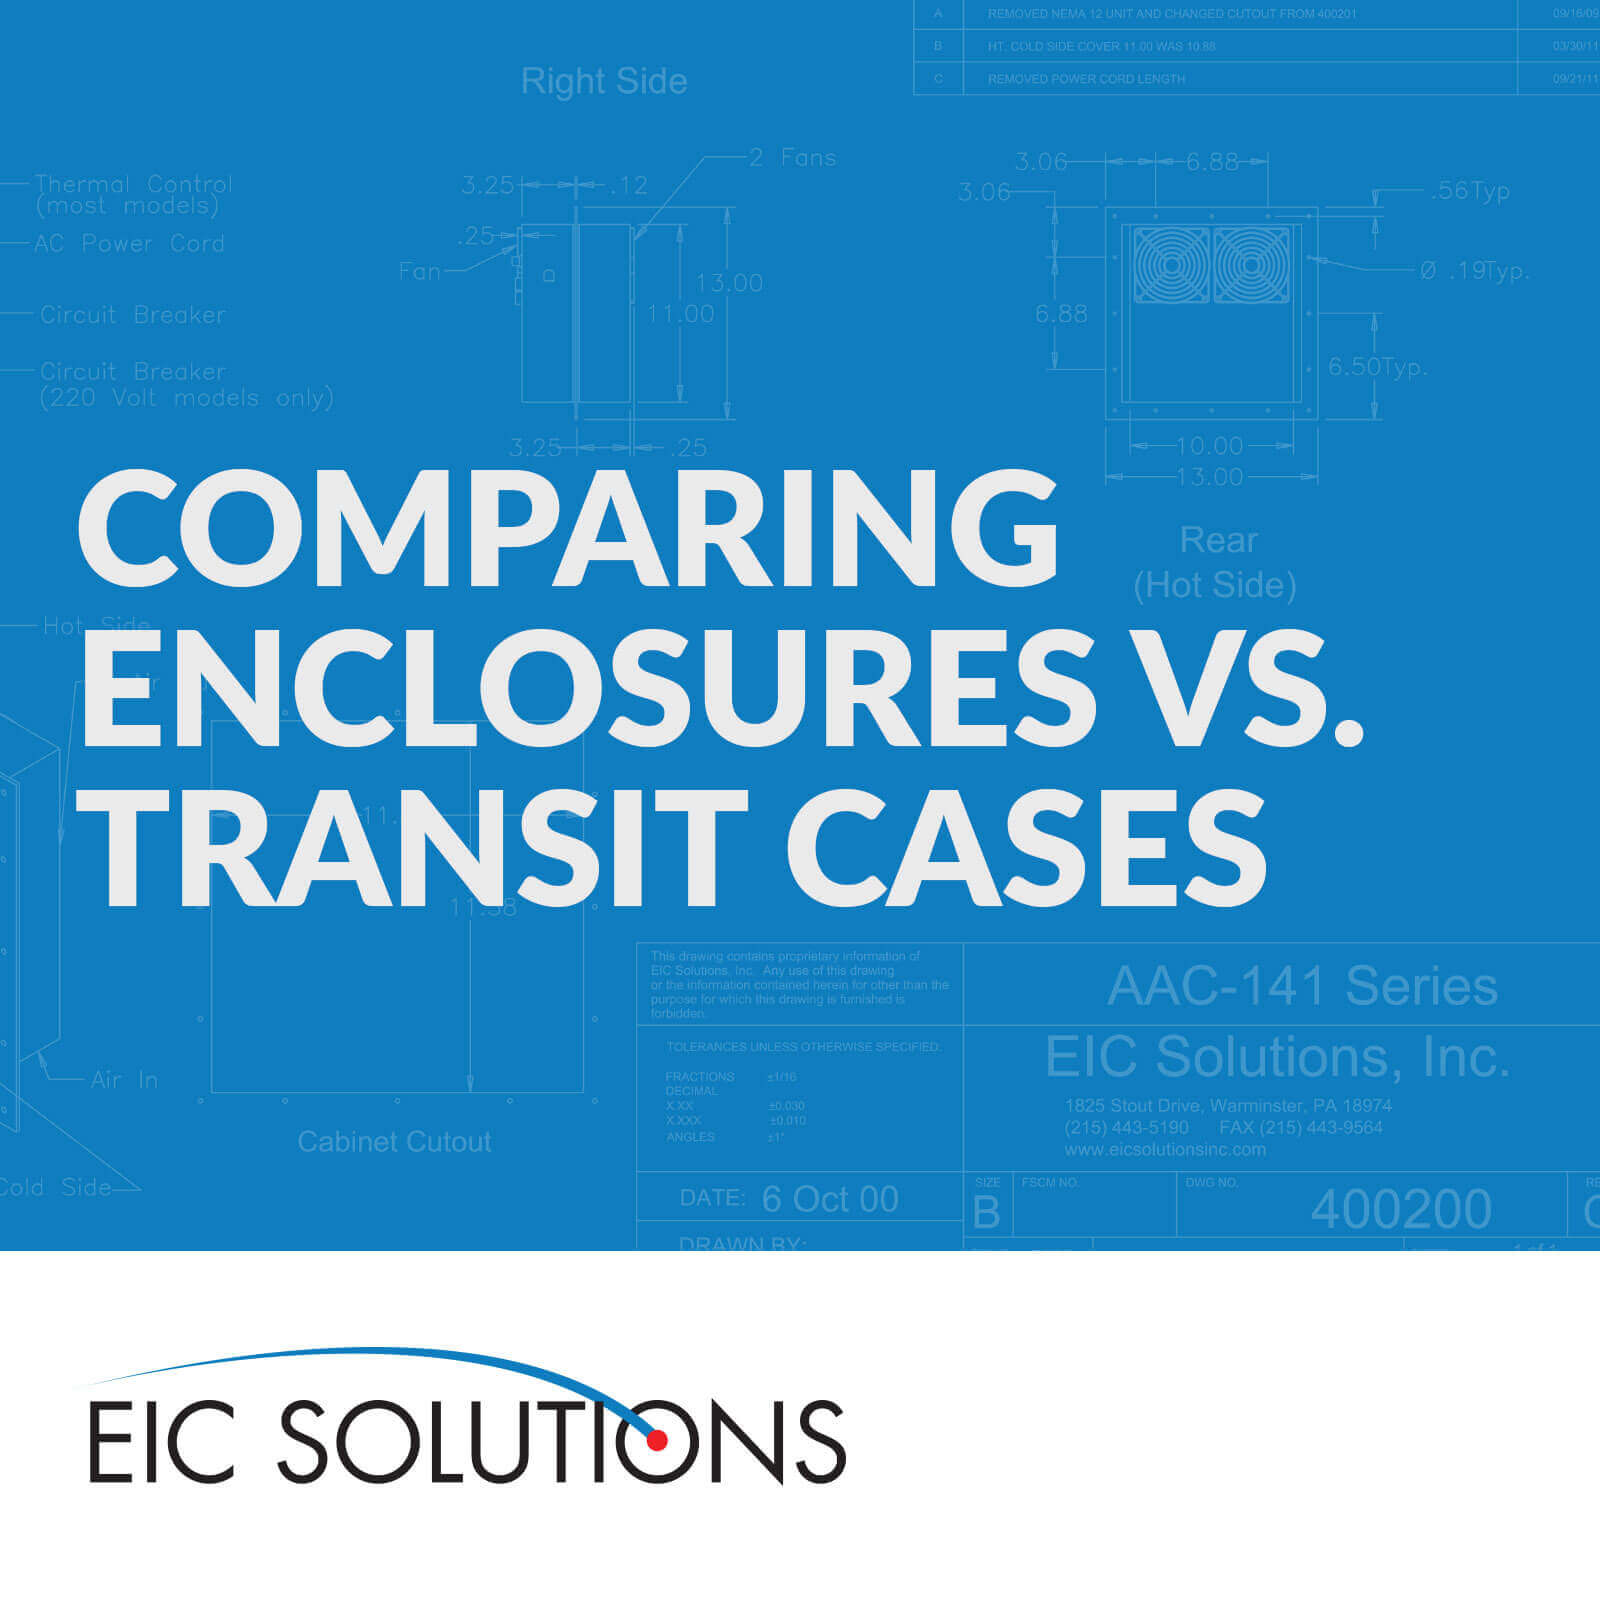 enclosure vs transitcase graphic